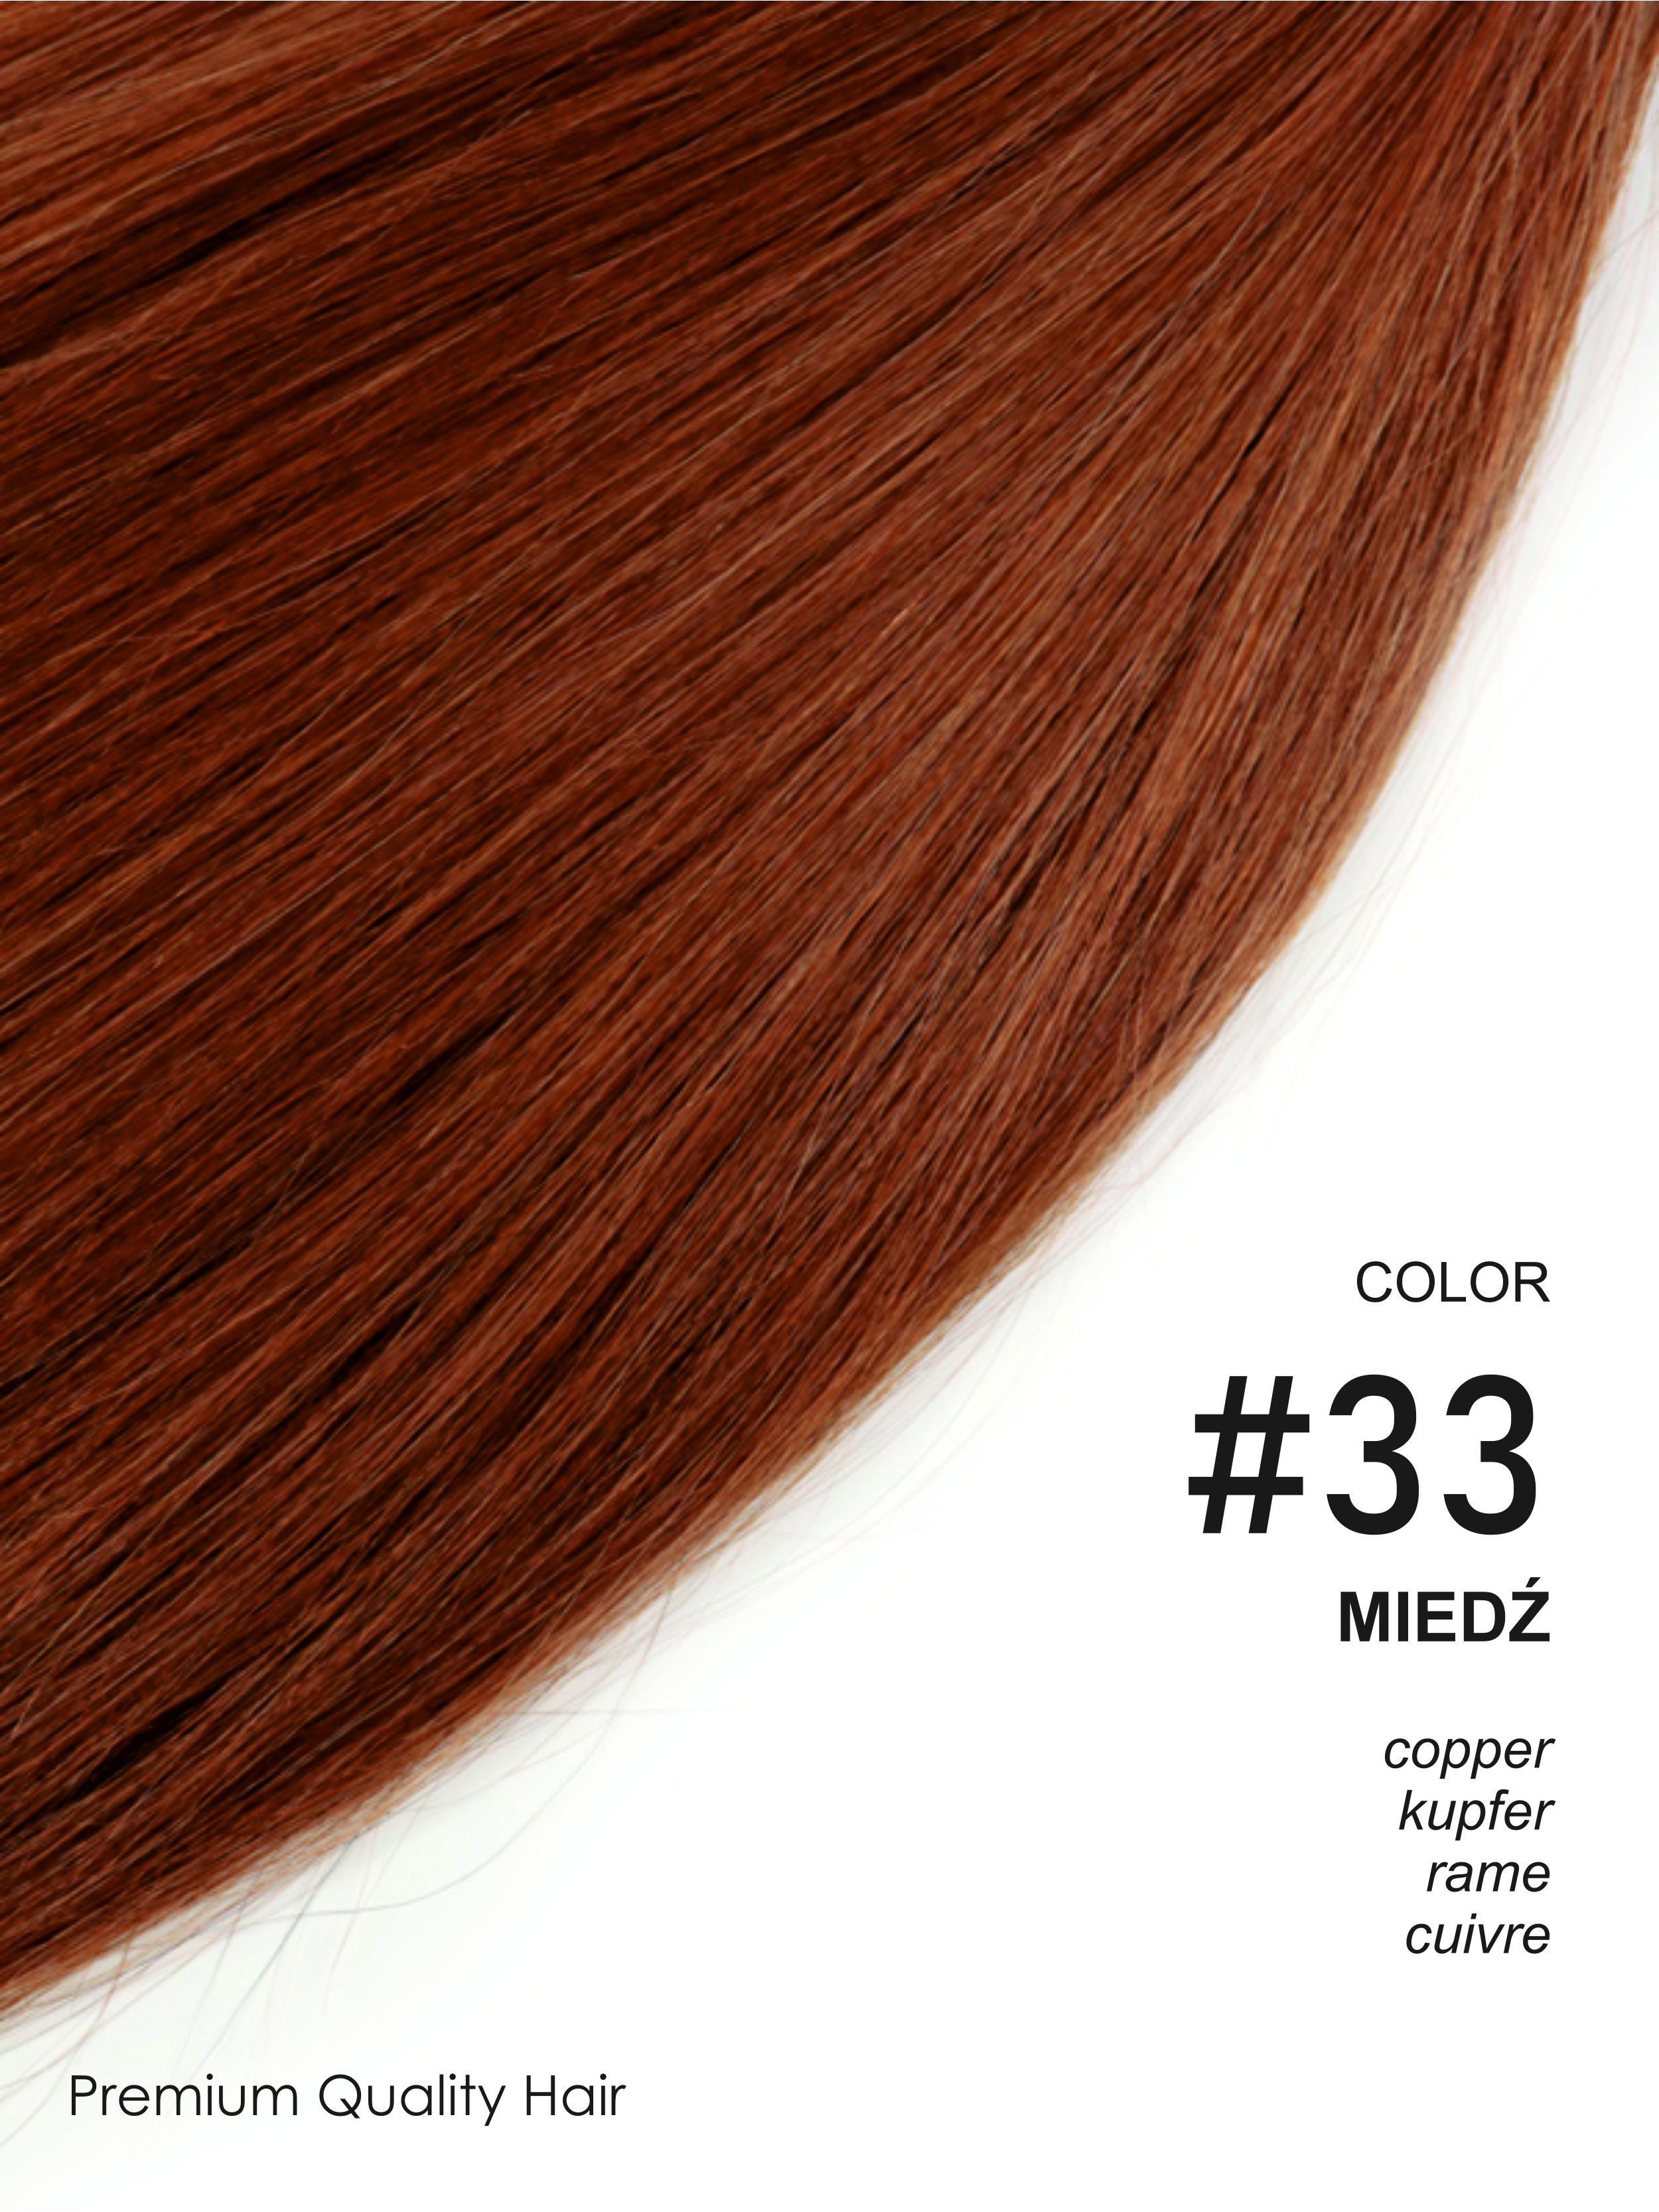 Beauty for You Slovanské vlasy - rovné prameny s plochým hrotem, vlasy 40 cm, pro keratinovou nebo ultrazvukovou metodu